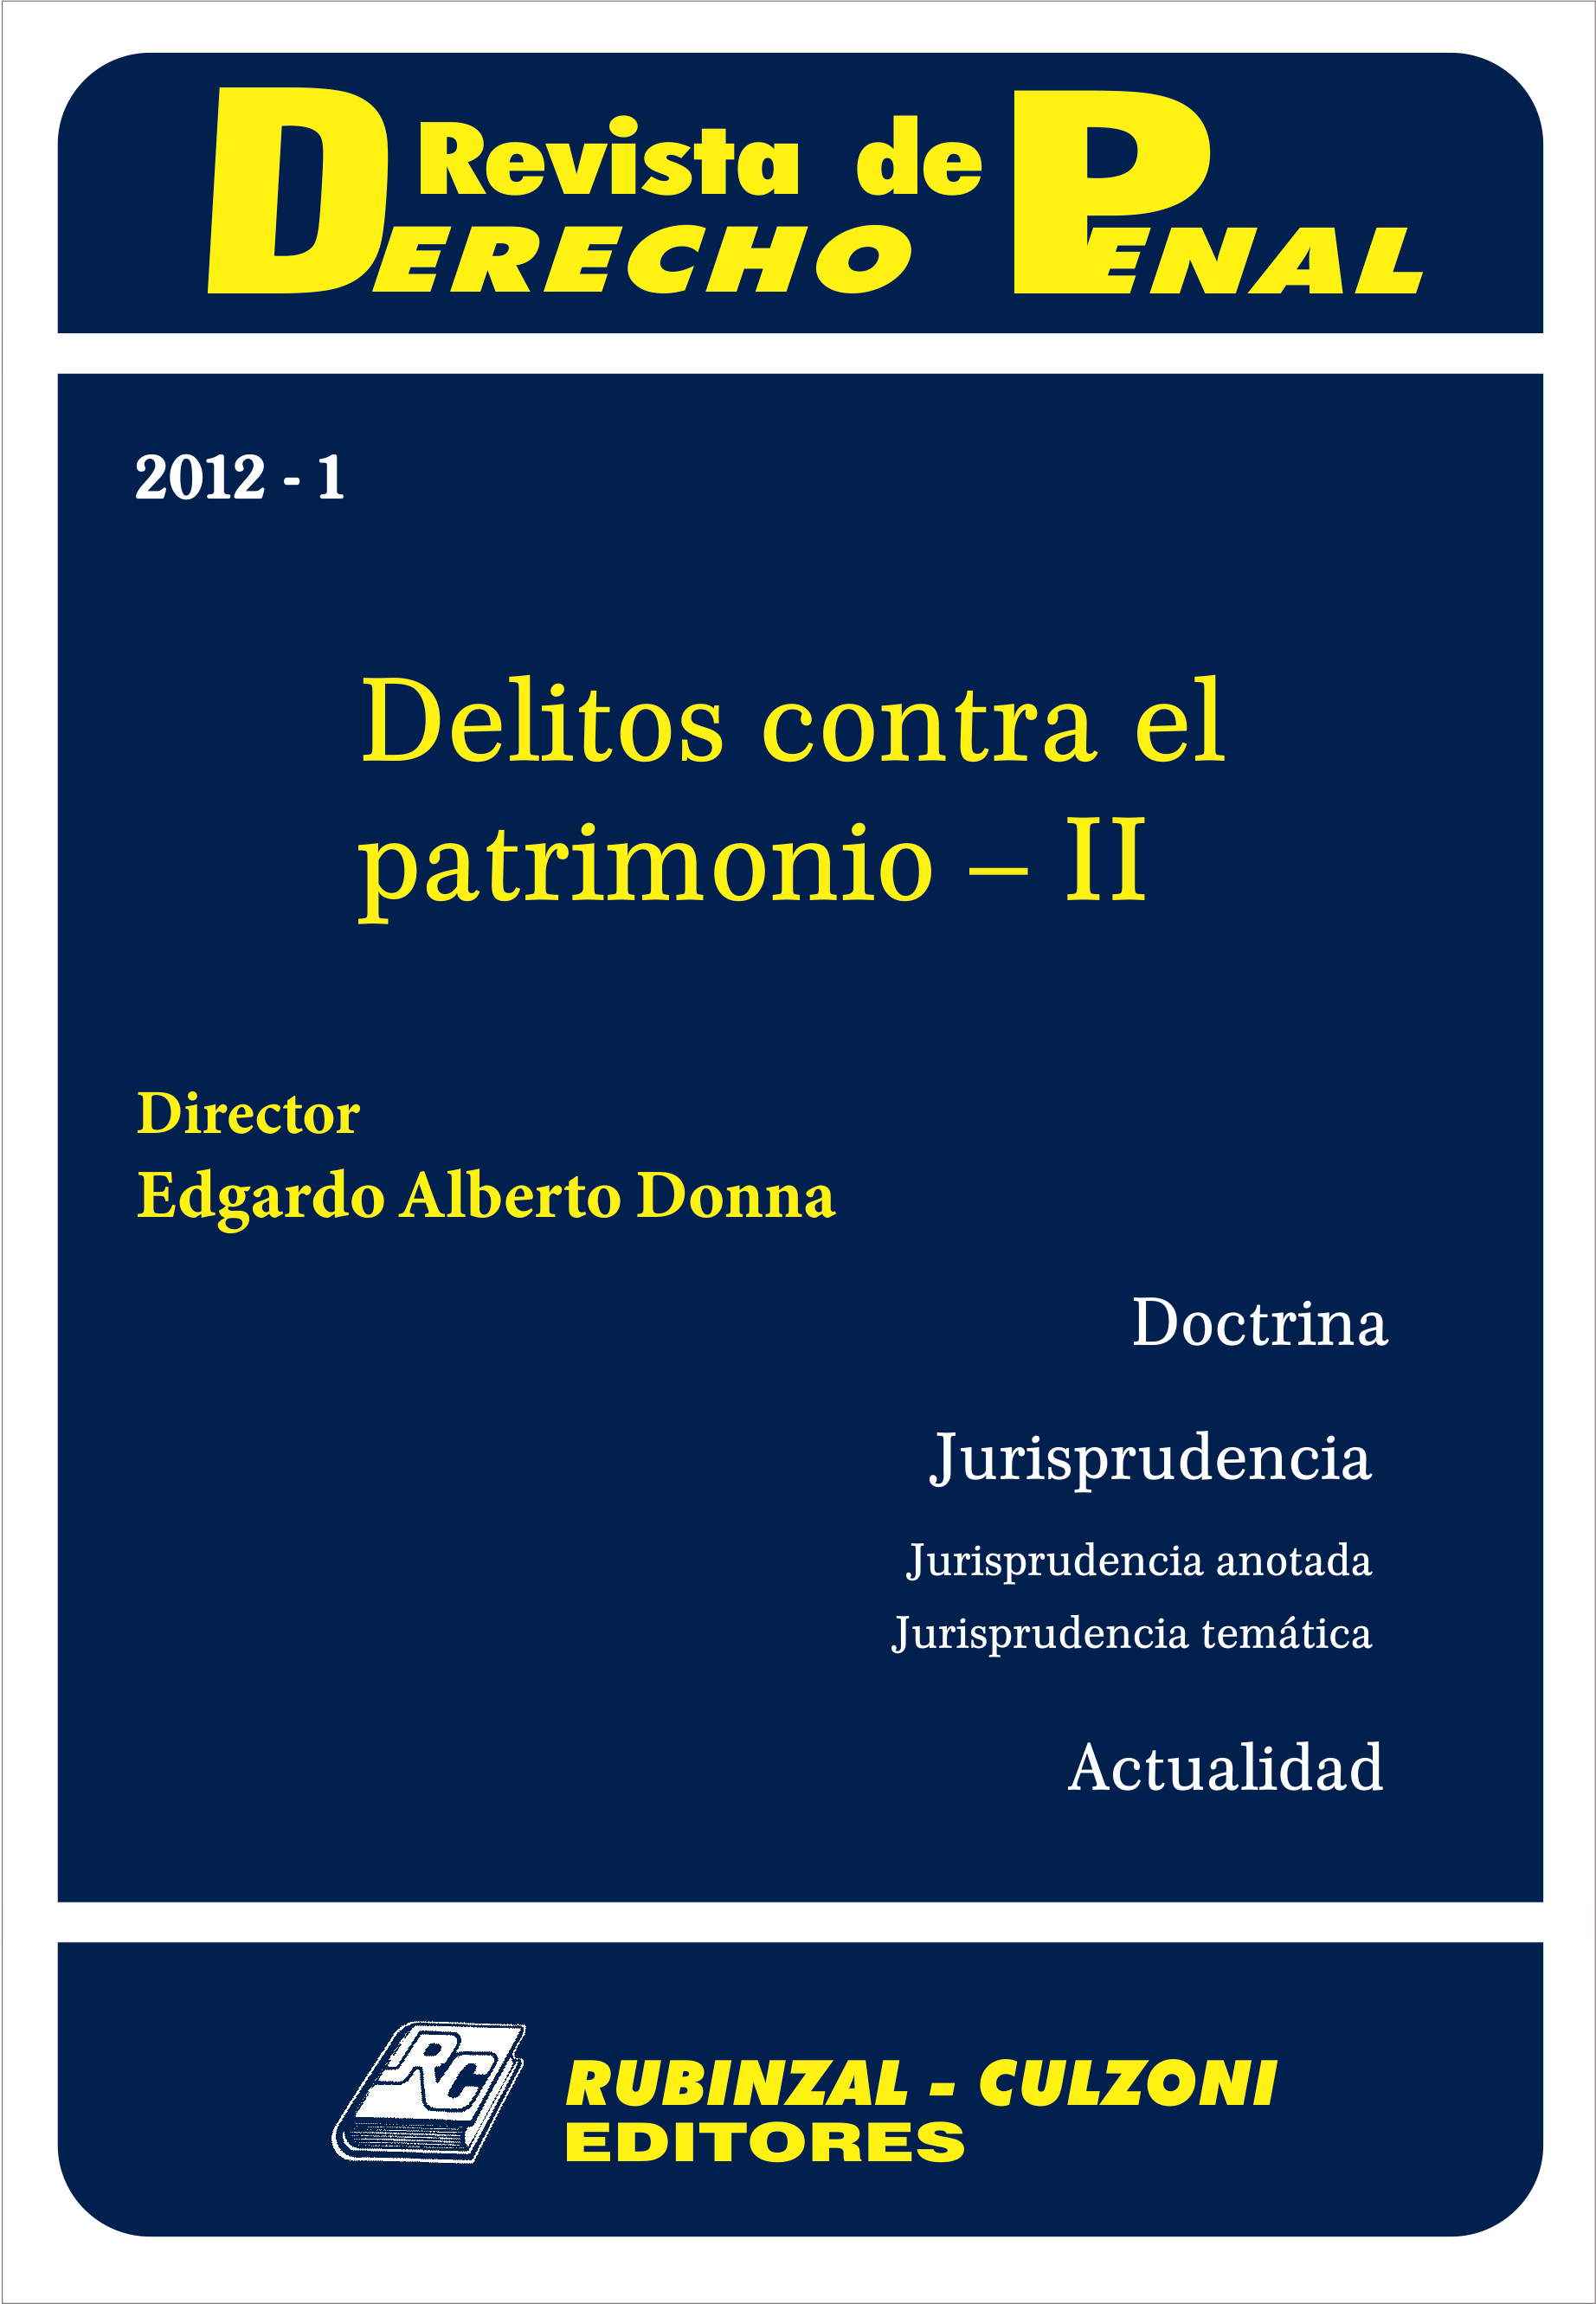 Revista de Derecho Penal - Delitos contra el patrimonio - II